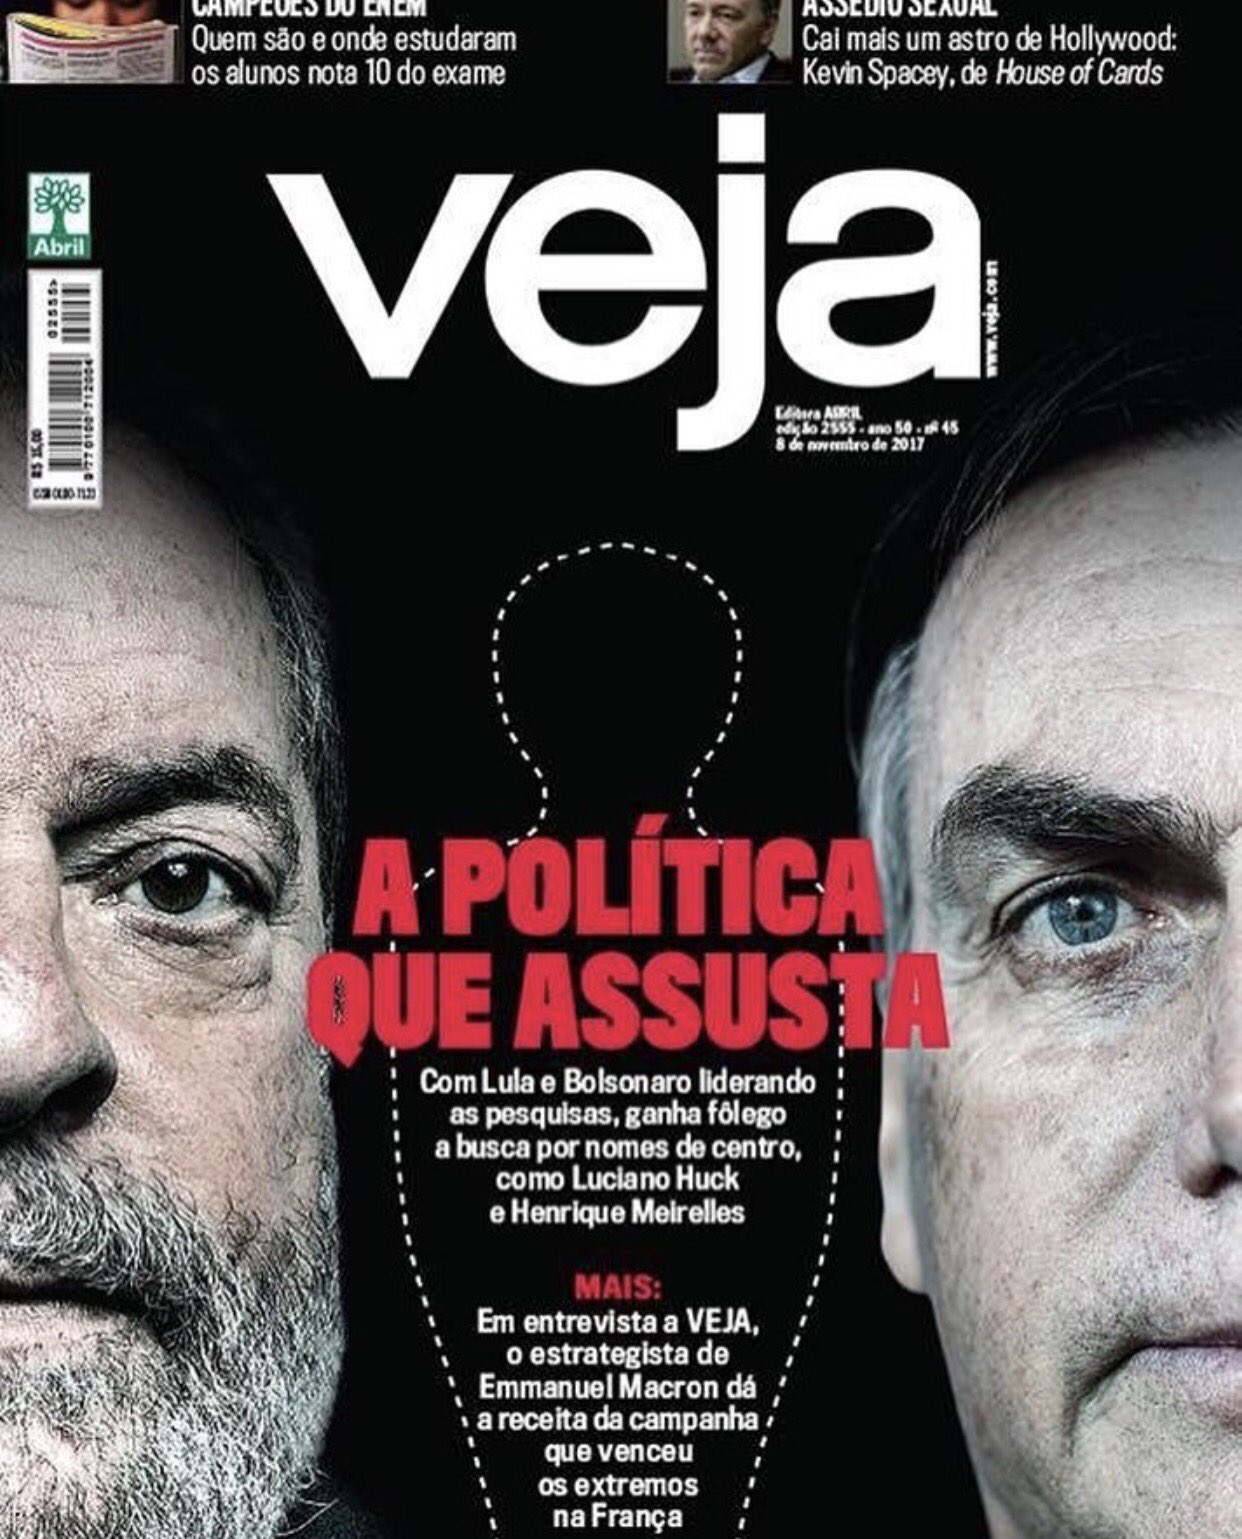 Jair M. Bolsonaro on Twitter: "Revista @VEJA sendo revista Veja: Eles o queridinho Lata-Velha Reformada do sistema! O medo deles tem nome e não é o corrupto! https://t.co/RUWitPoB5b" /